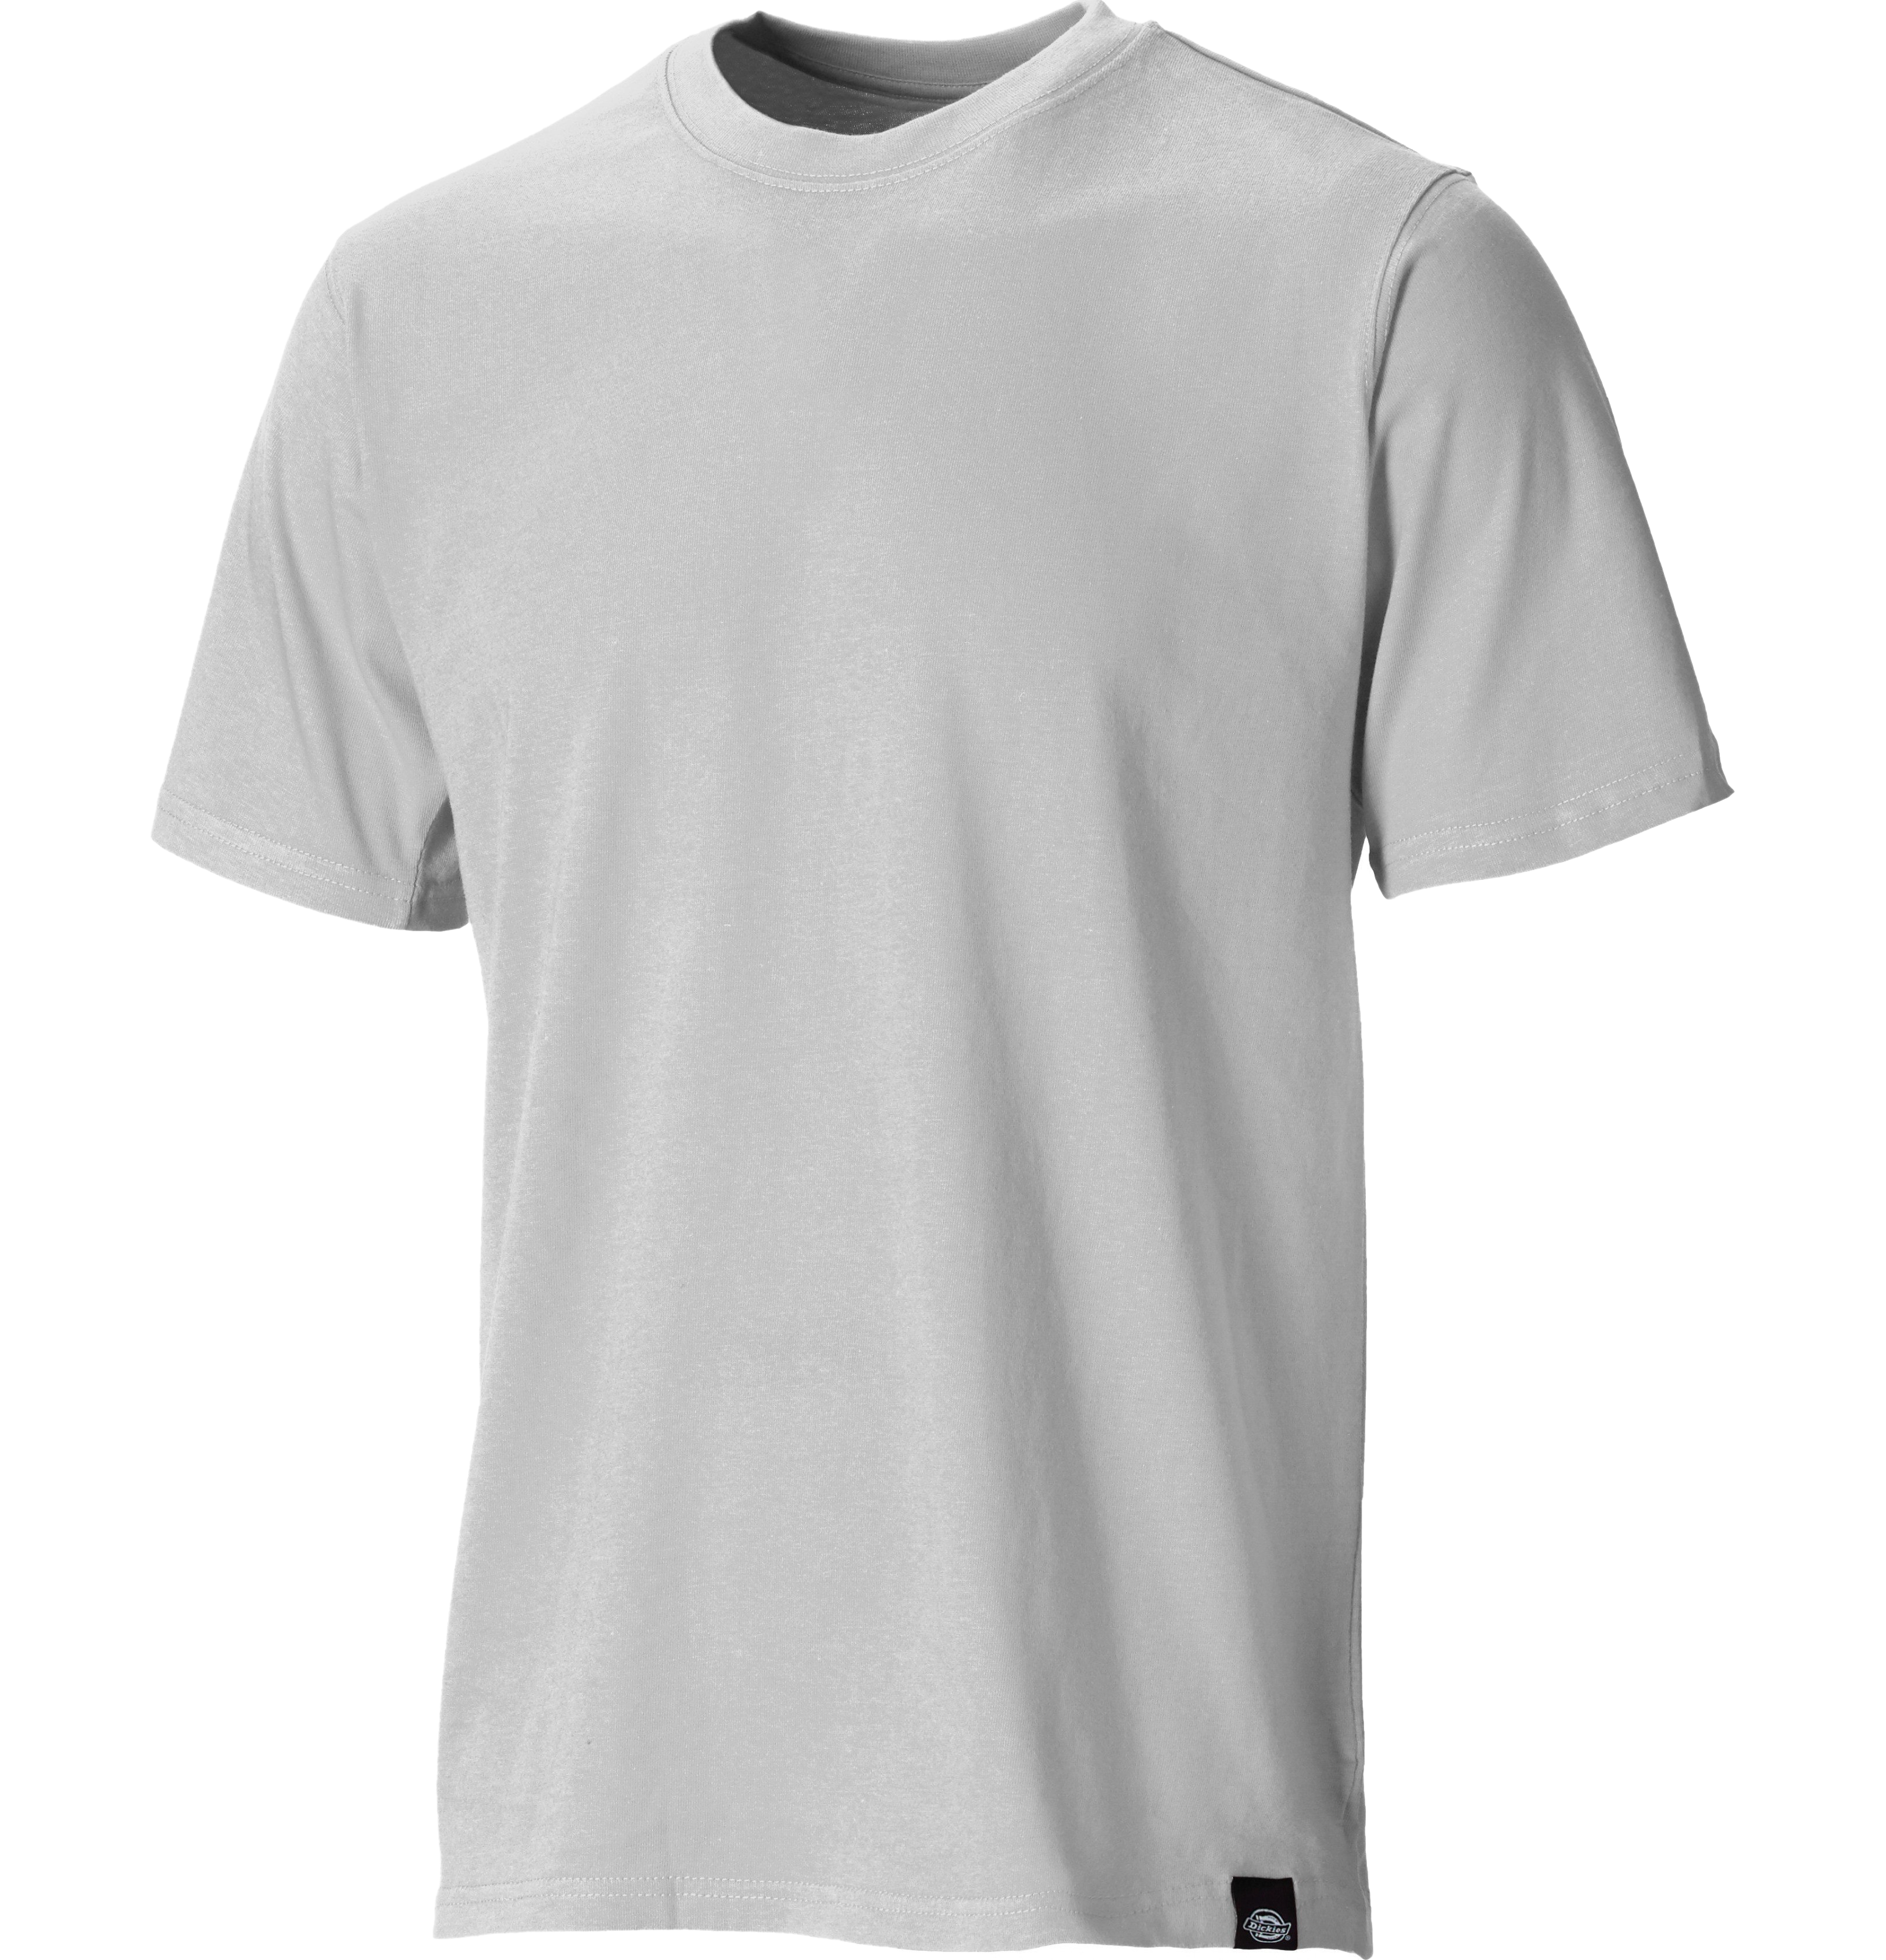 Imagen de PNG de camiseta gris lisa